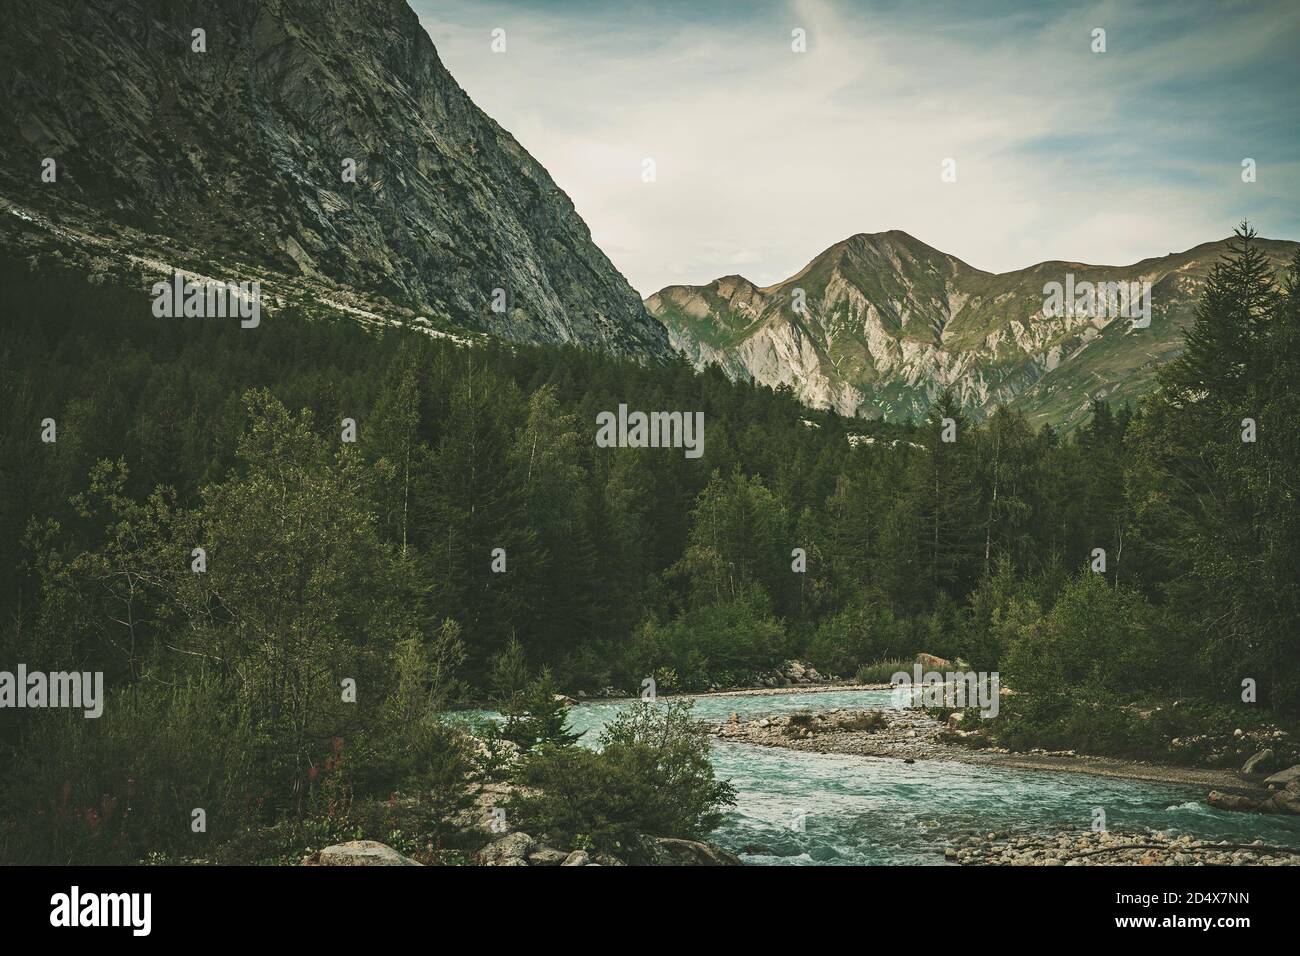 Vel Ferret oder Ferret Valley Italian Alpine Destination. Berg und die Sumemr Landschaft. Stockfoto